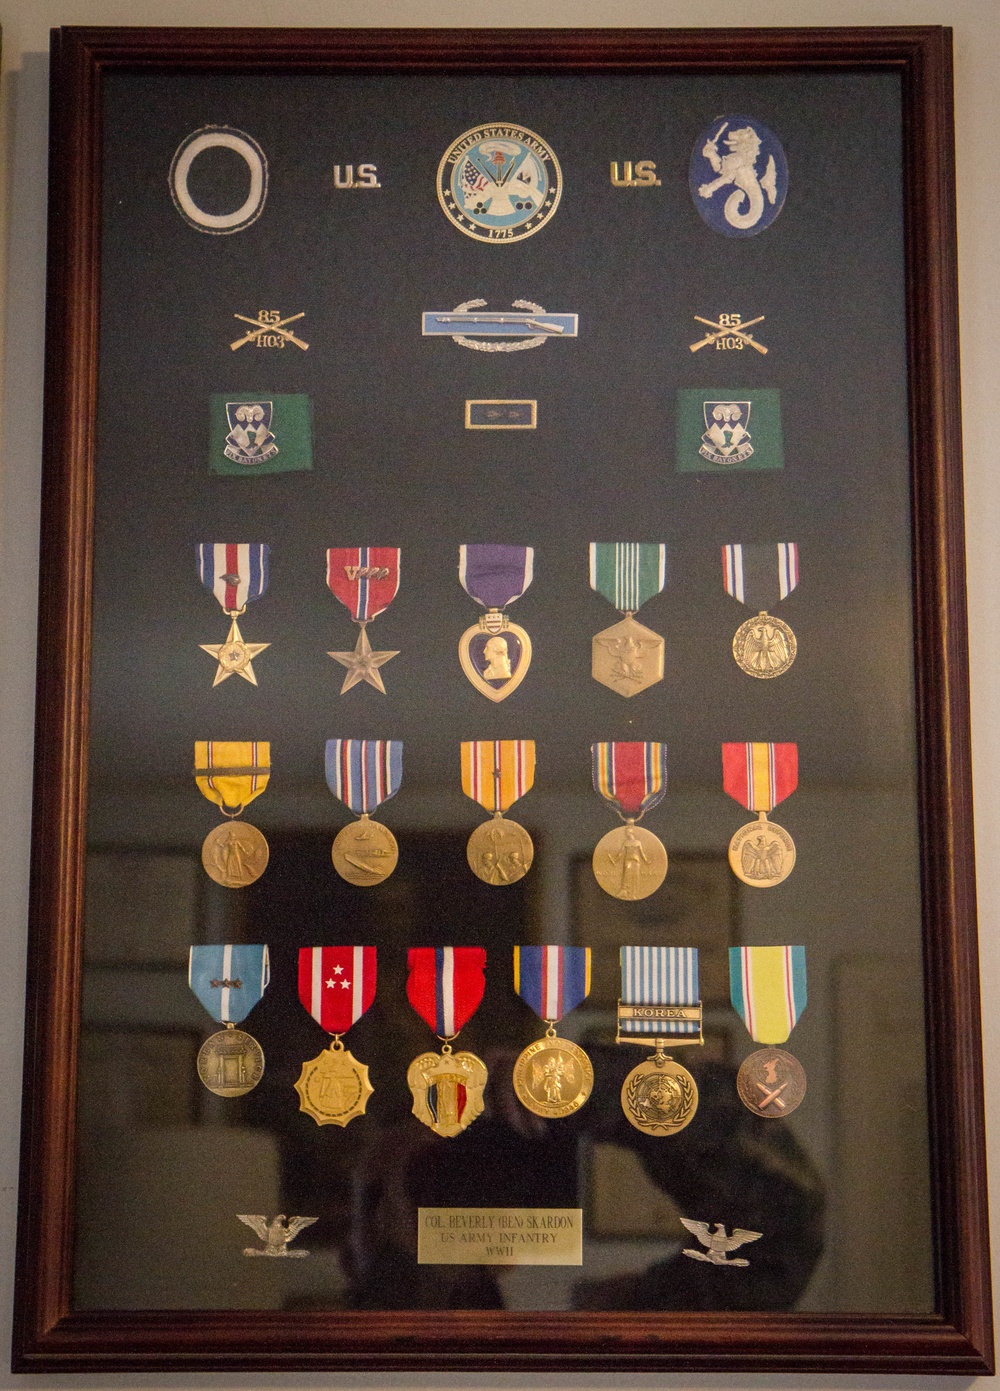 A survivor's medals